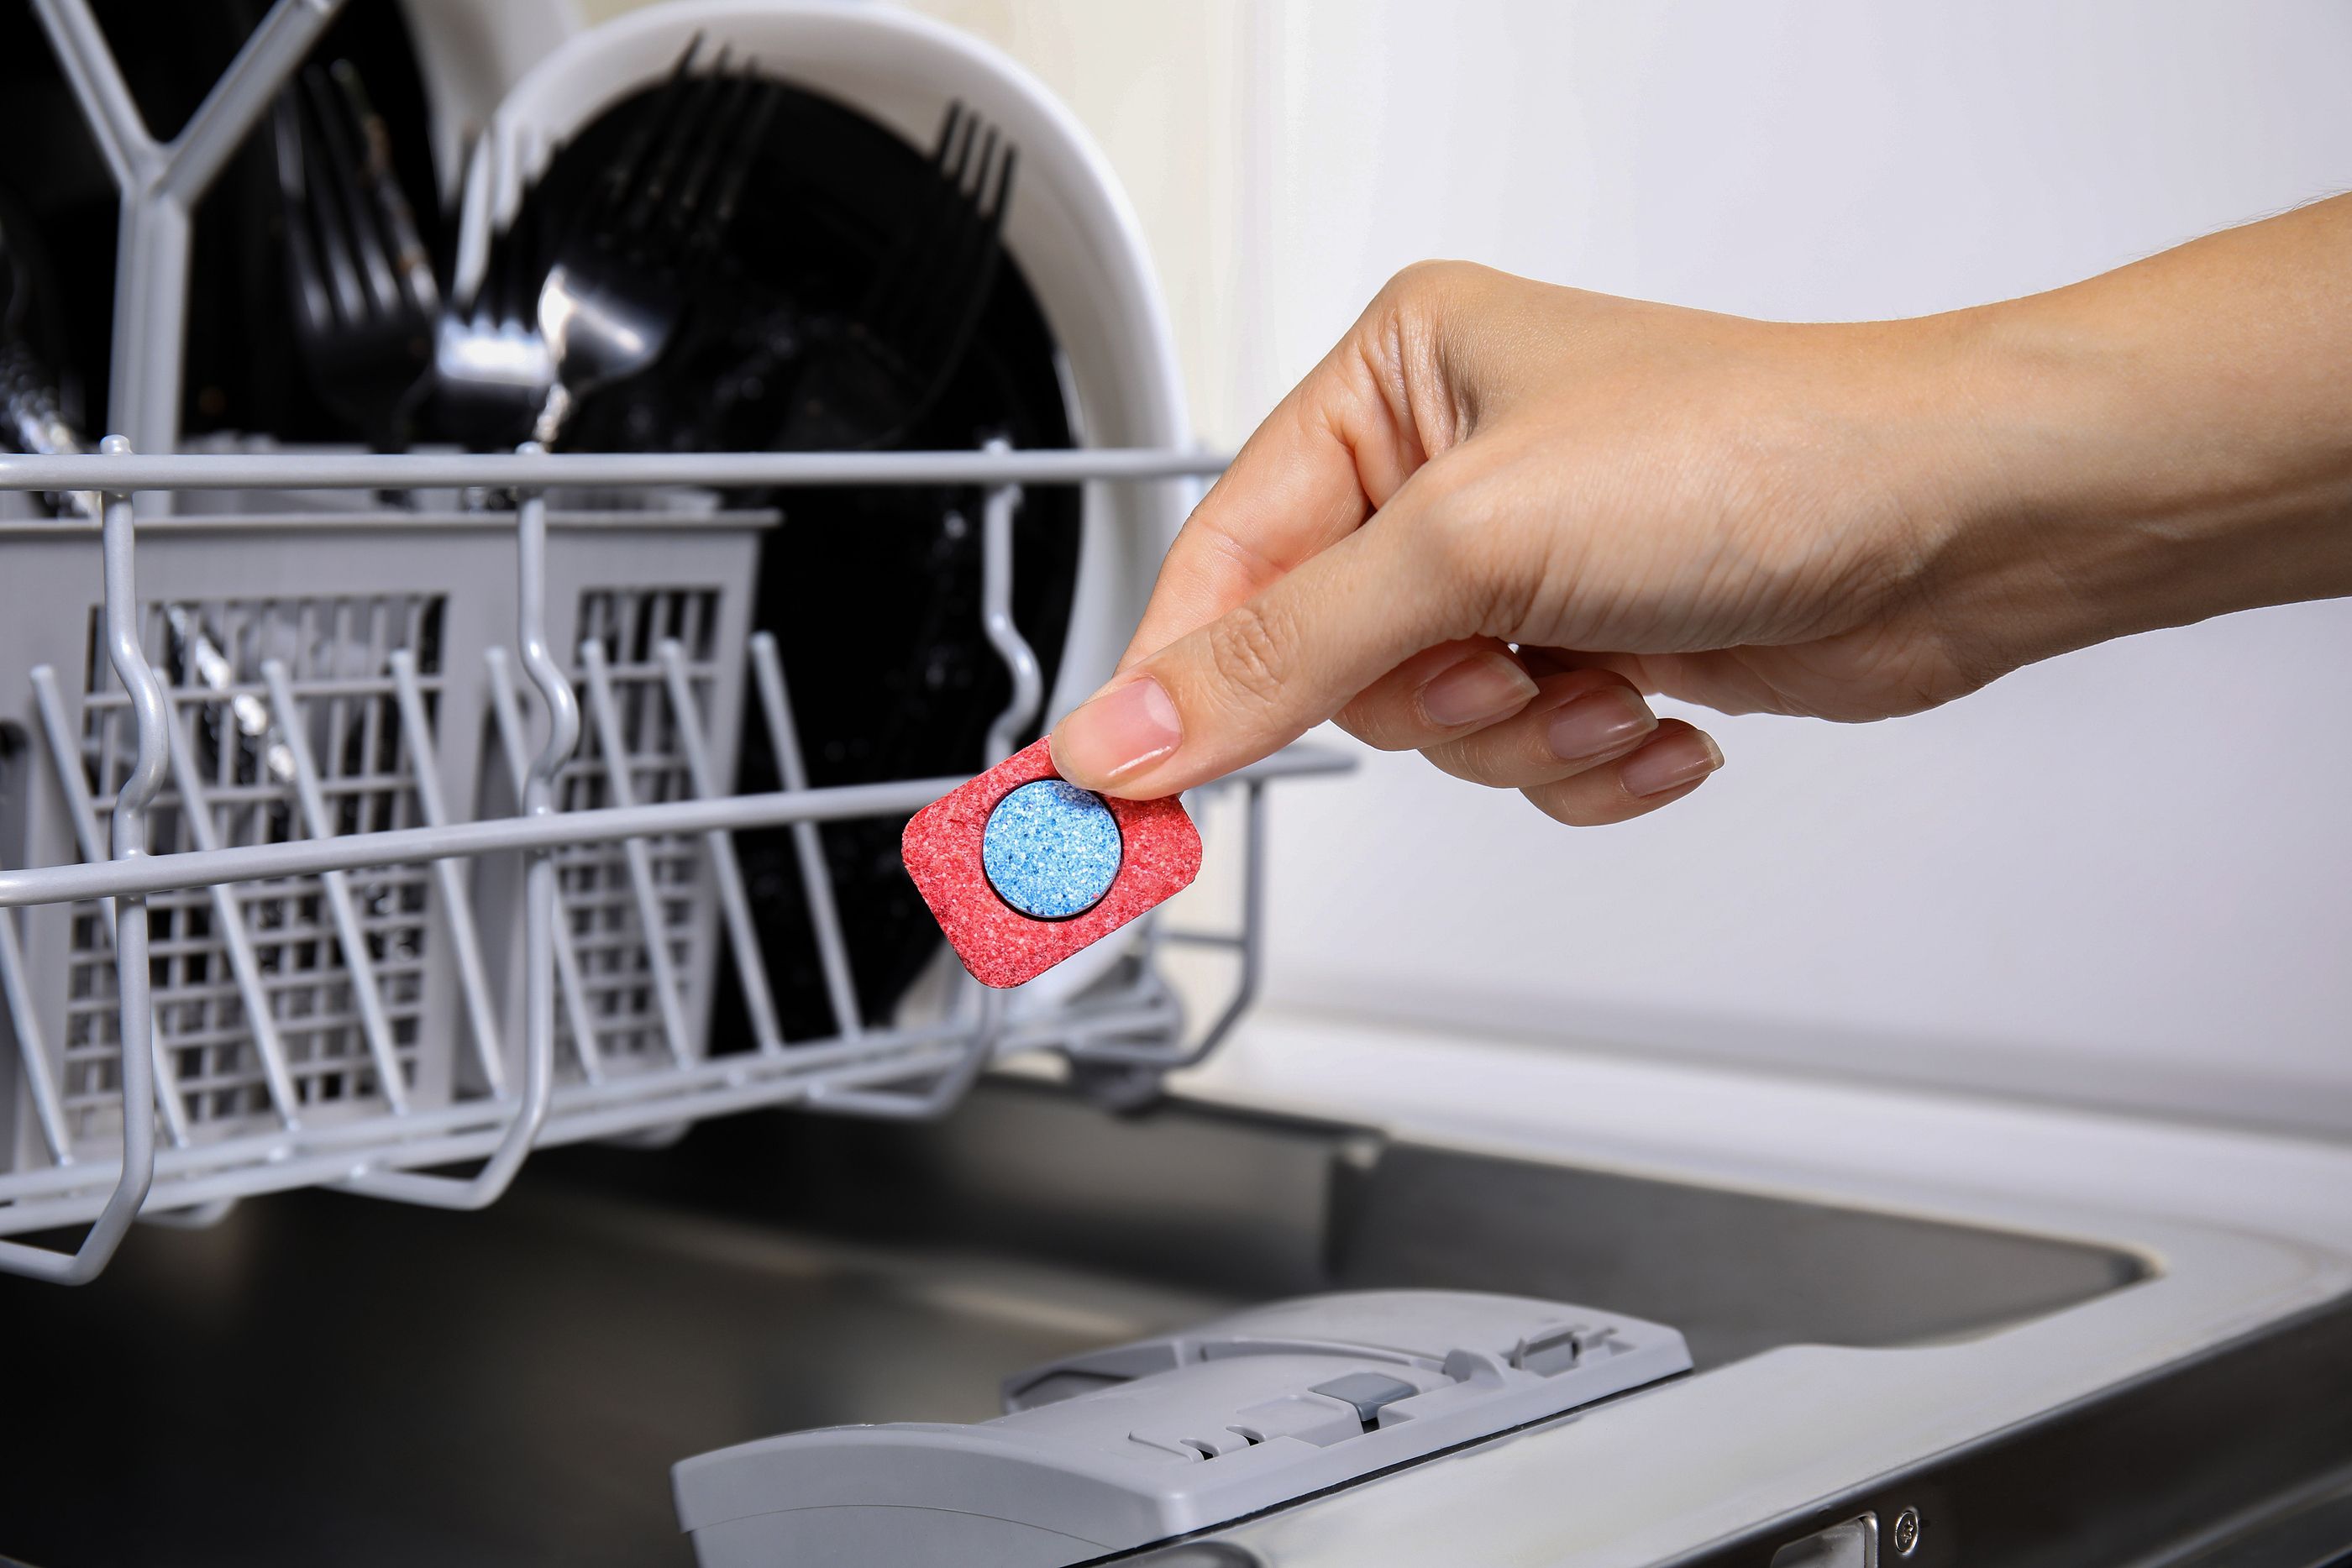 Mejores detergentes para lavavajillas